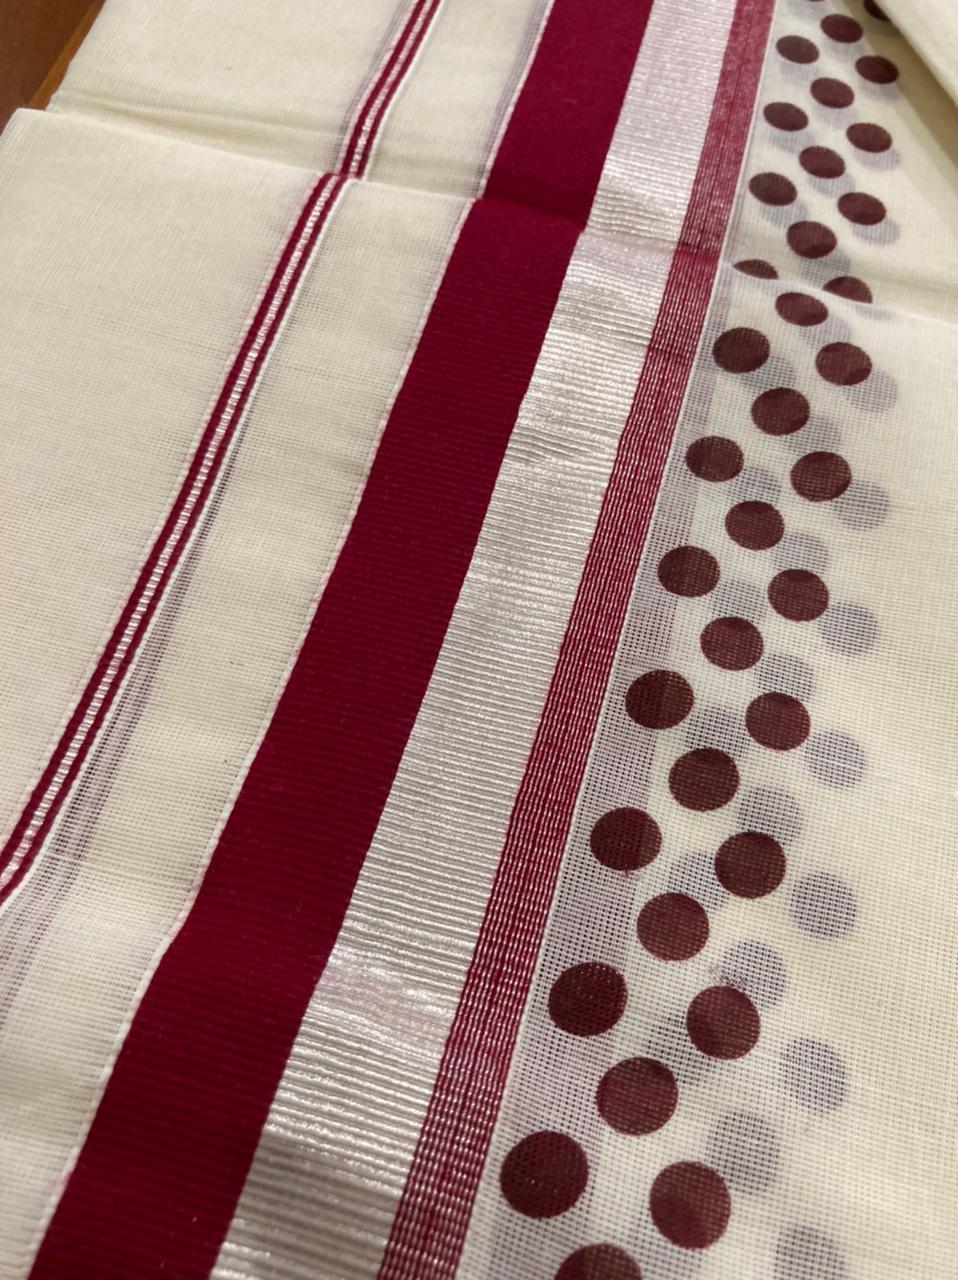 Kerala Cotton Mundum Neriyathum (Set Mundu) with Block Prints on Silver Kasavu and Maroon Border 2.80 Mtrs